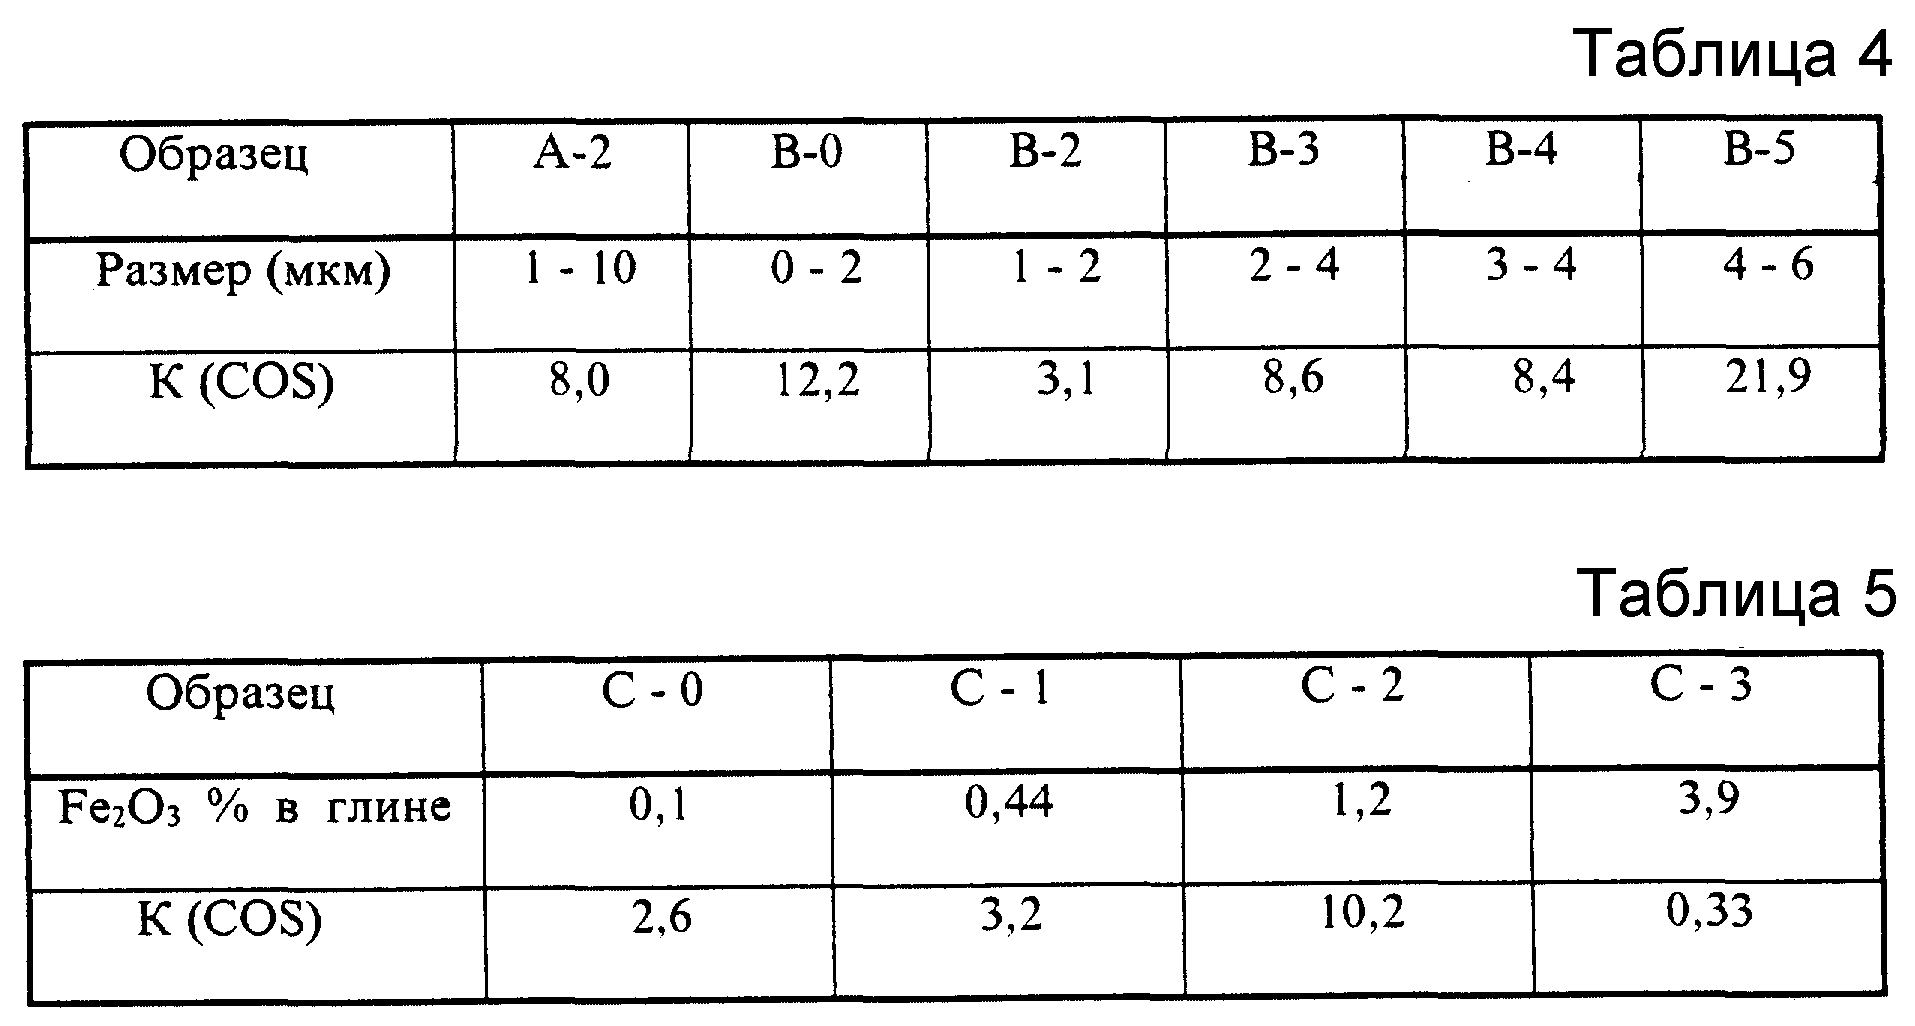 Таблица cos. Cos таблица размеров. Cos Размерная сетка. ГАЗ обработка таблиц 2 5. Co таблица работ.